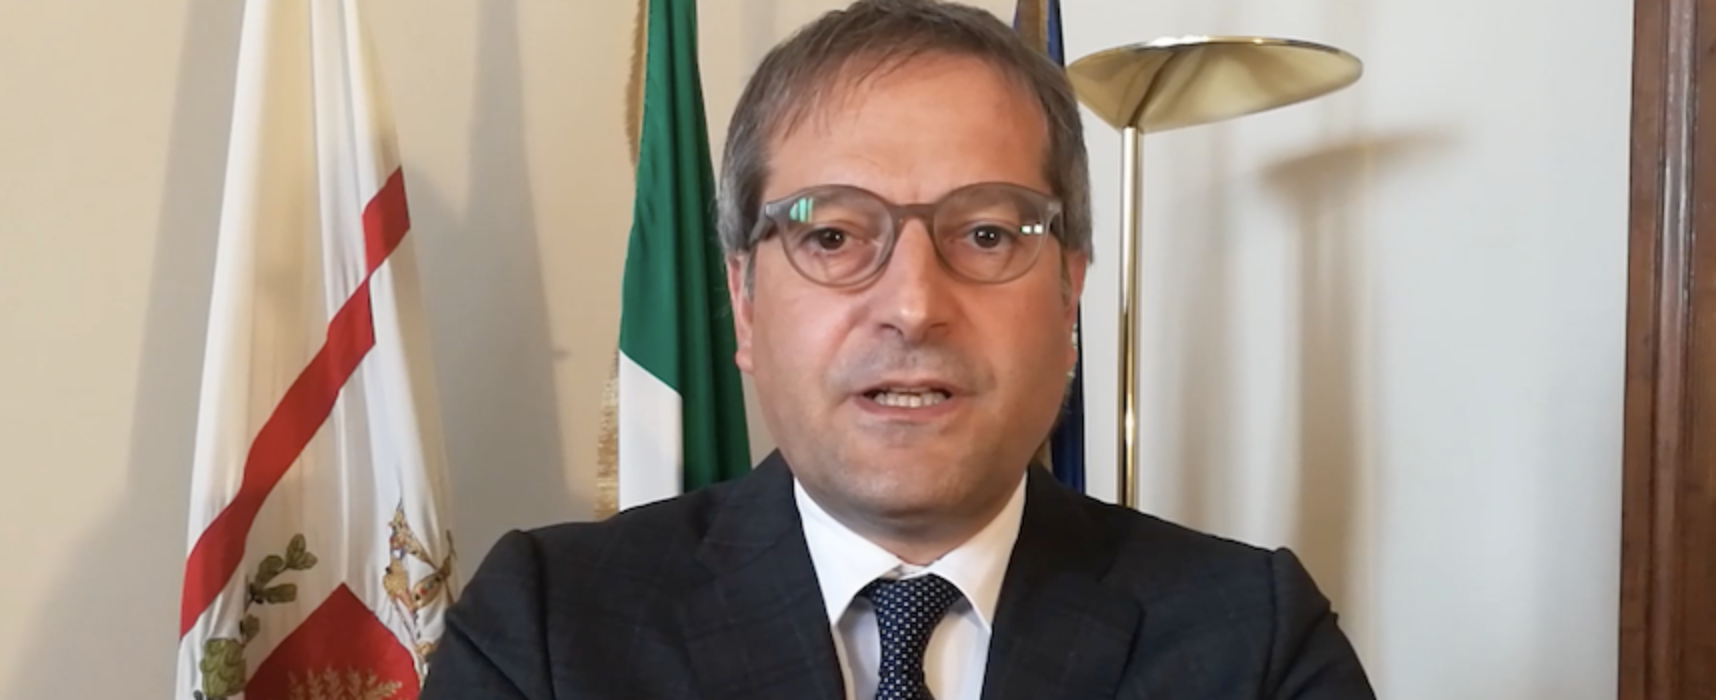 Sgombero via Taranto, le dichiarazioni del sindaco Angarano / VIDEO